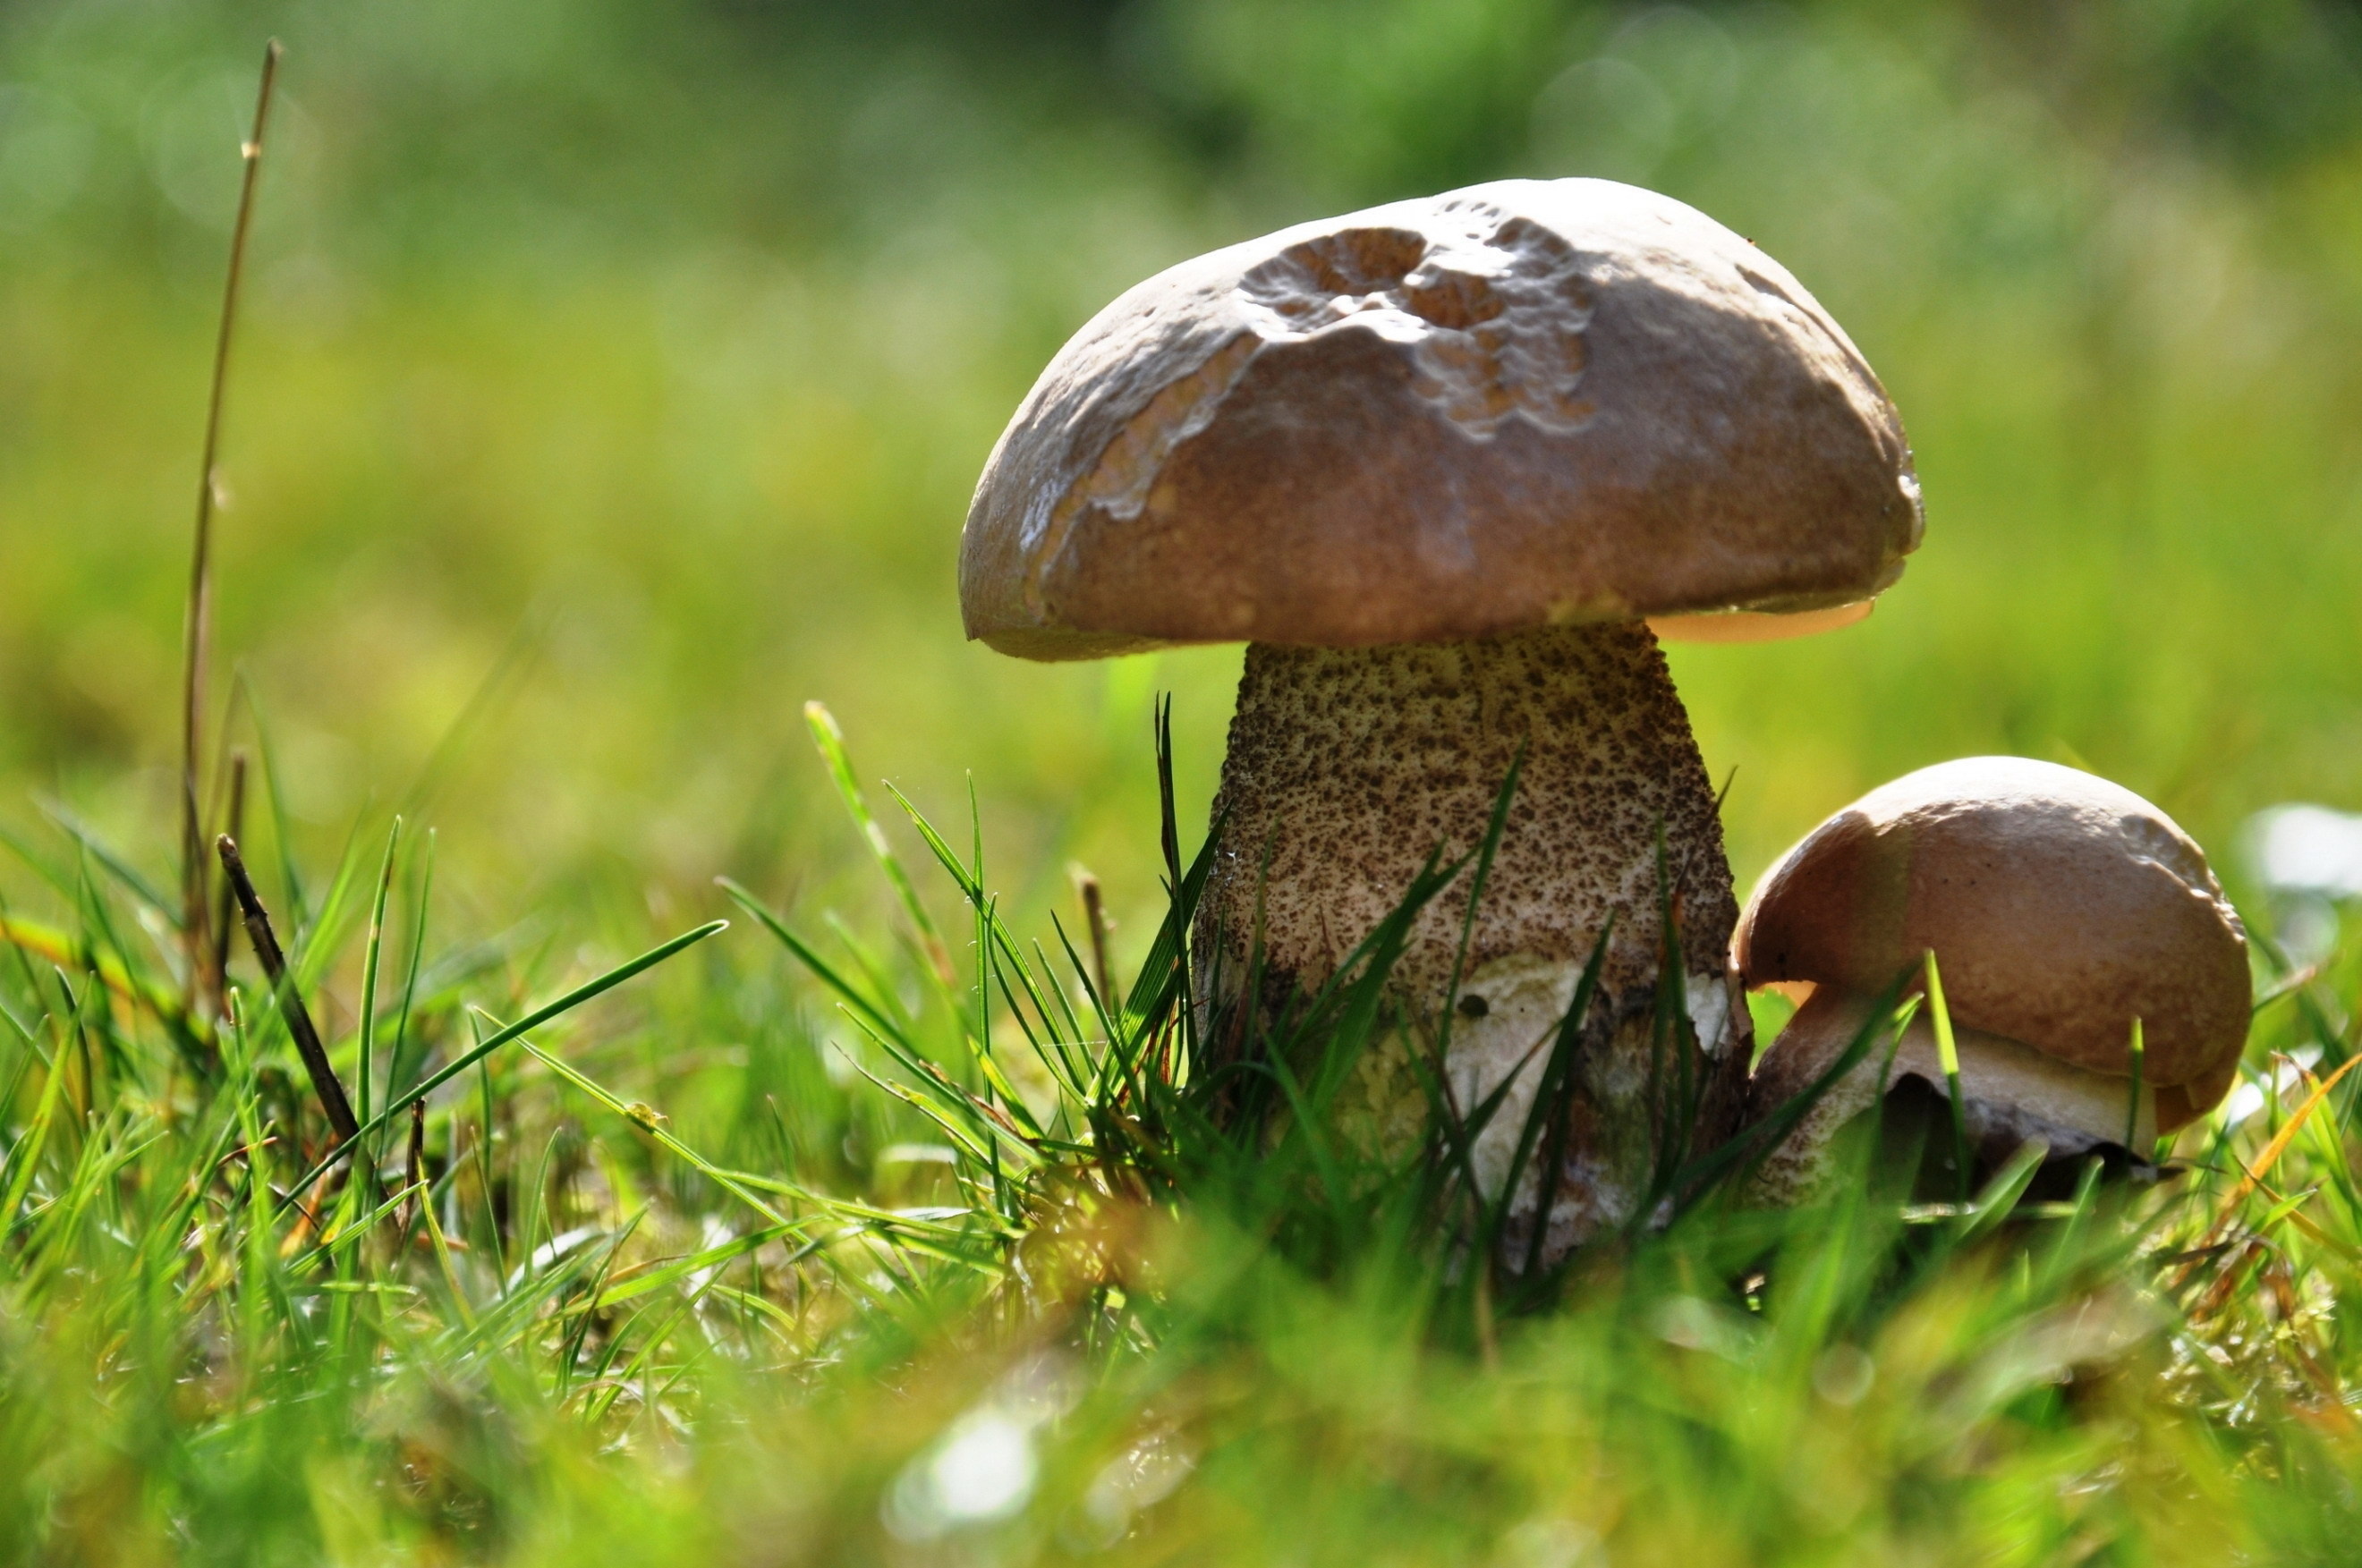 Macro mushroom photo, Bokeh effect, Nature close-up, Dreamy aesthetics, 2640x1760 HD Desktop